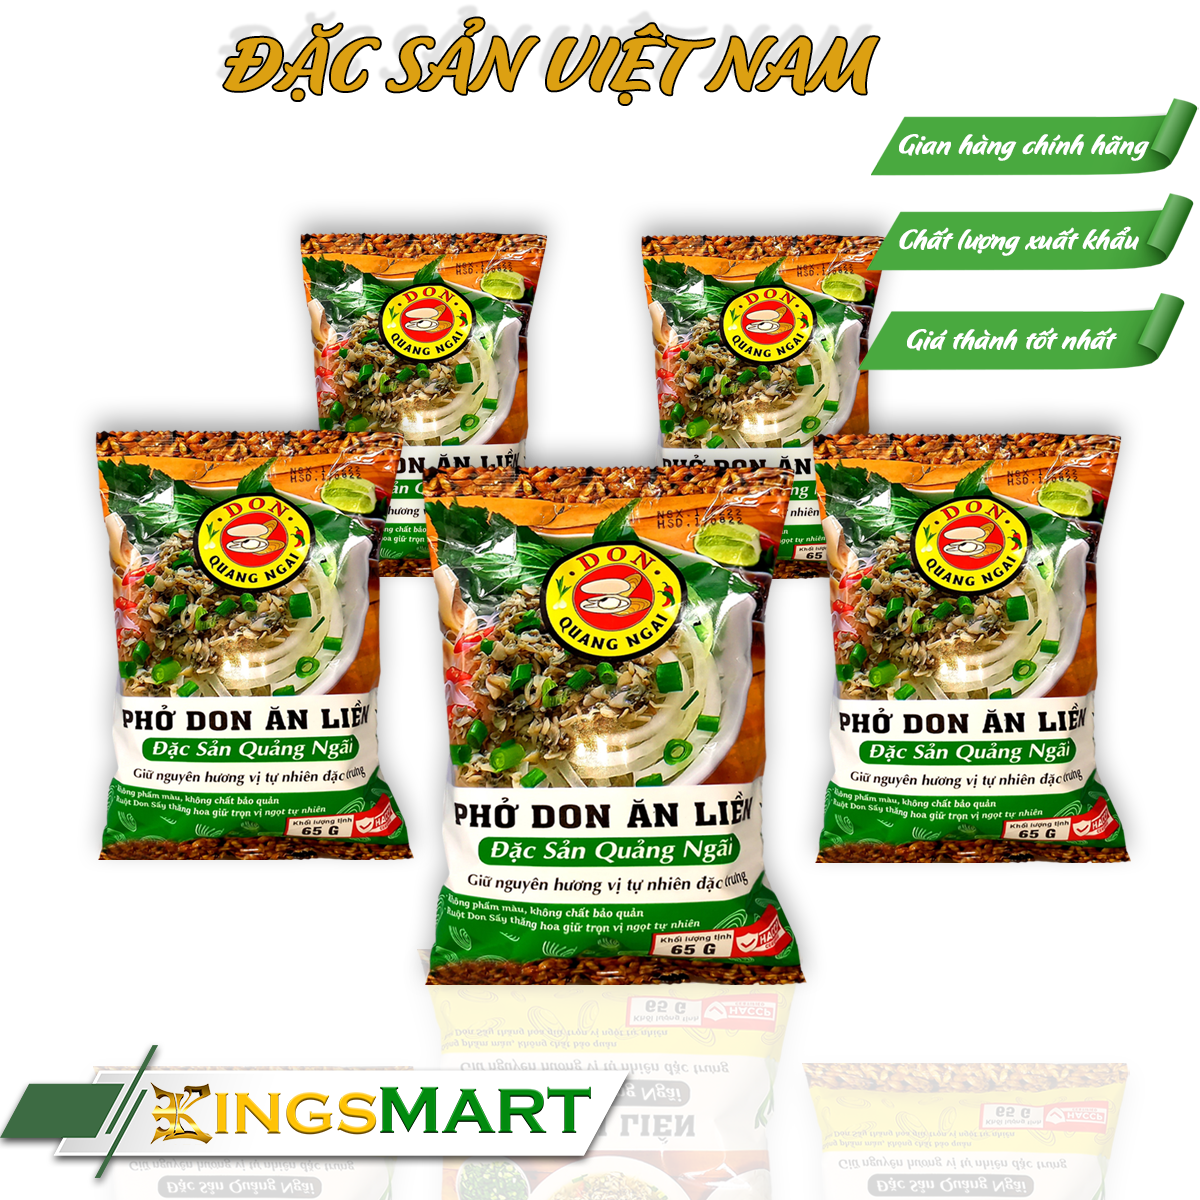 Don phở ăn liền - Combo 5 gói 65g gói - Đặc sản Quảng Ngãi - Kingsmart